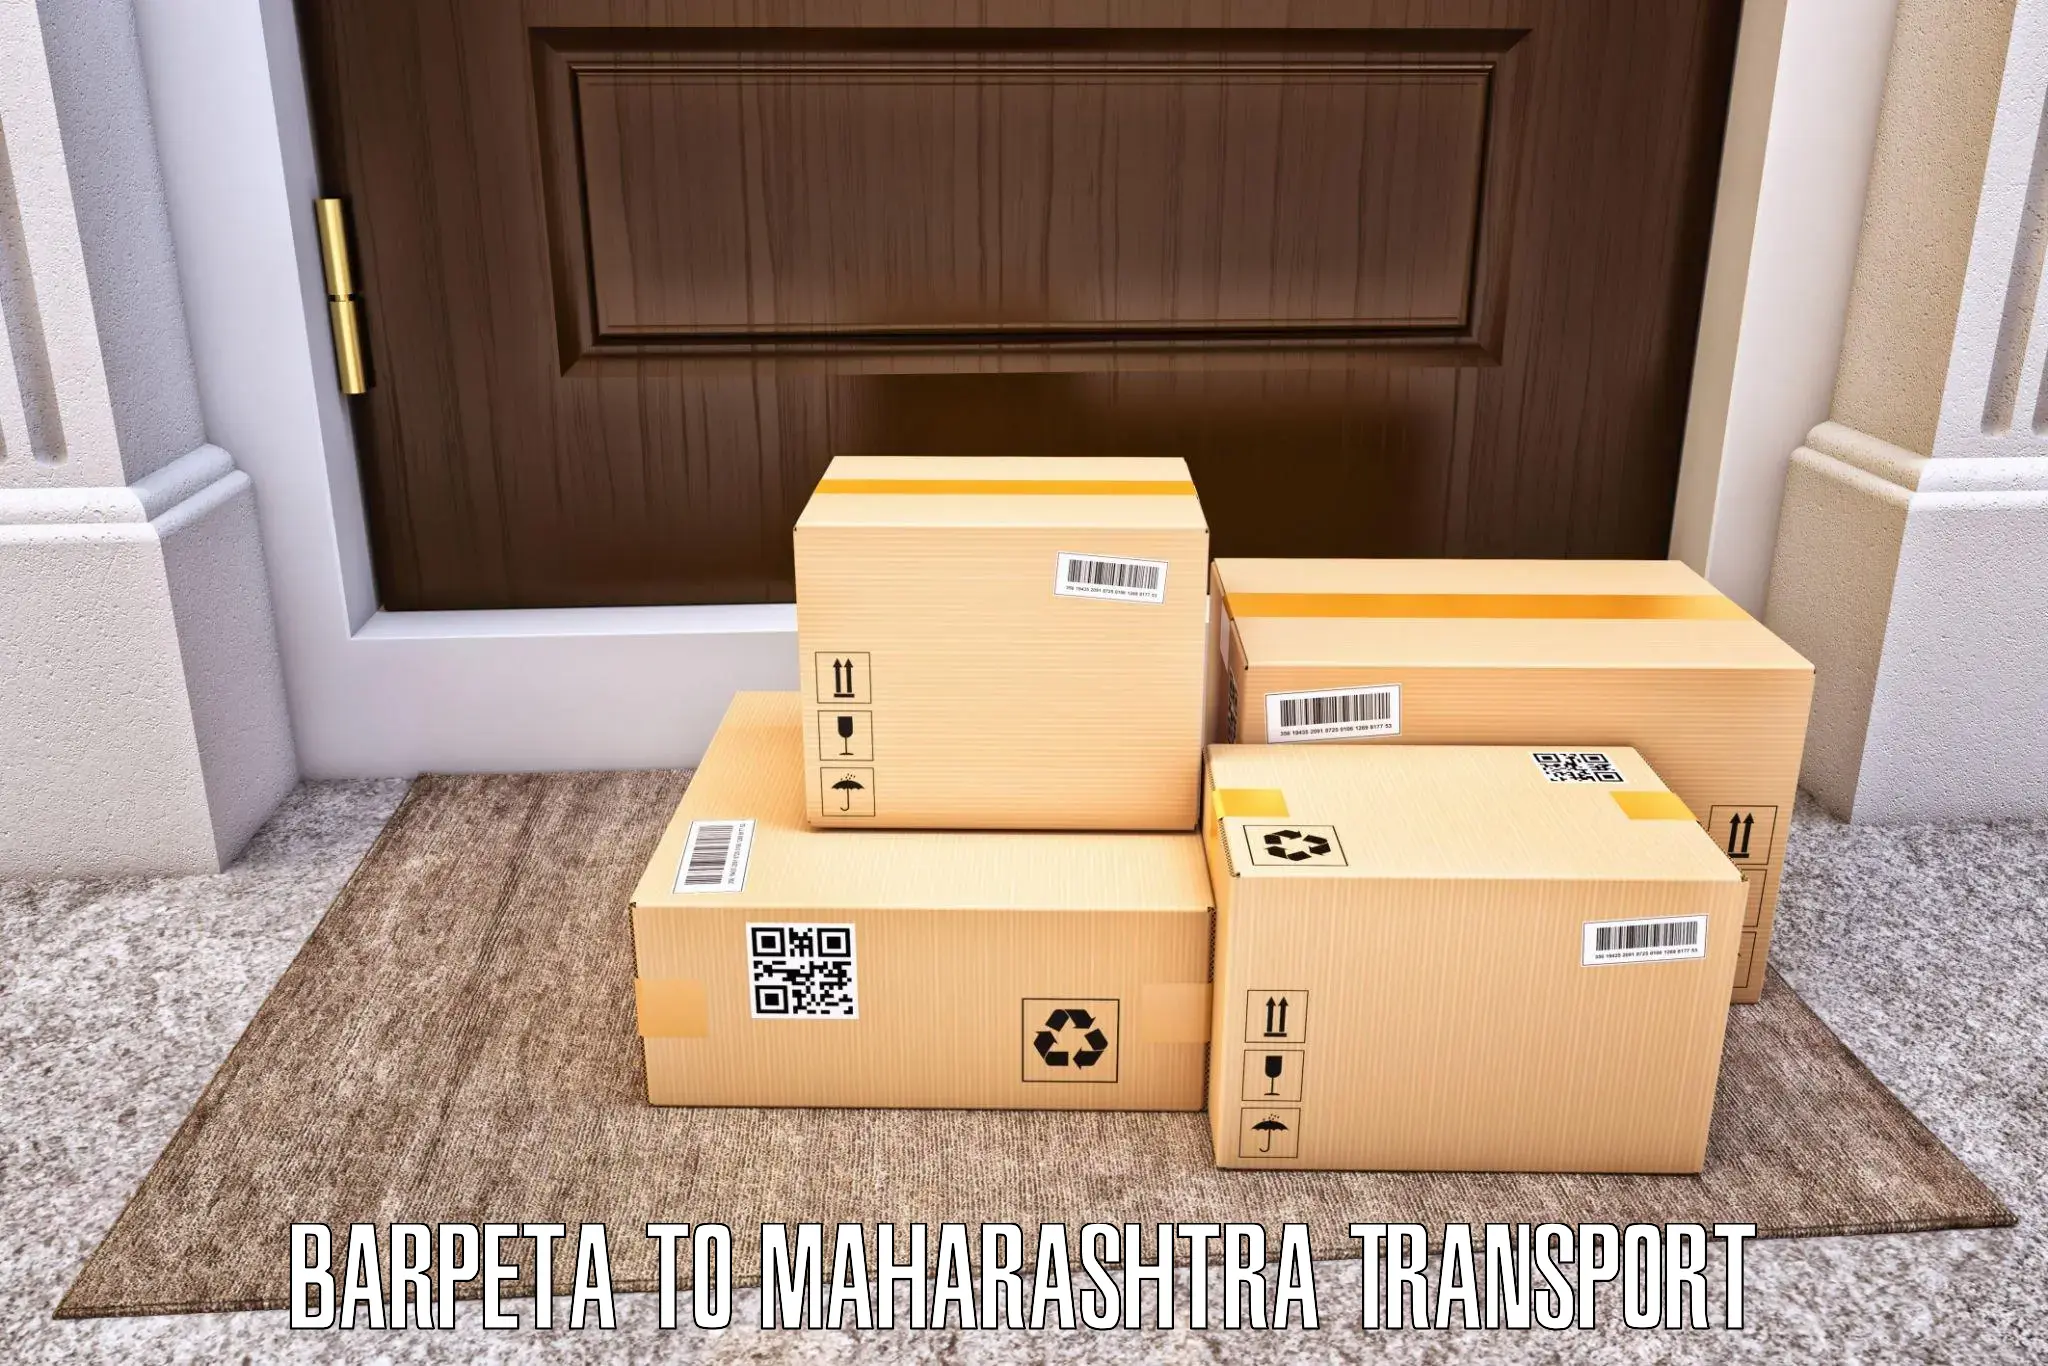 Online transport service Barpeta to Chembur